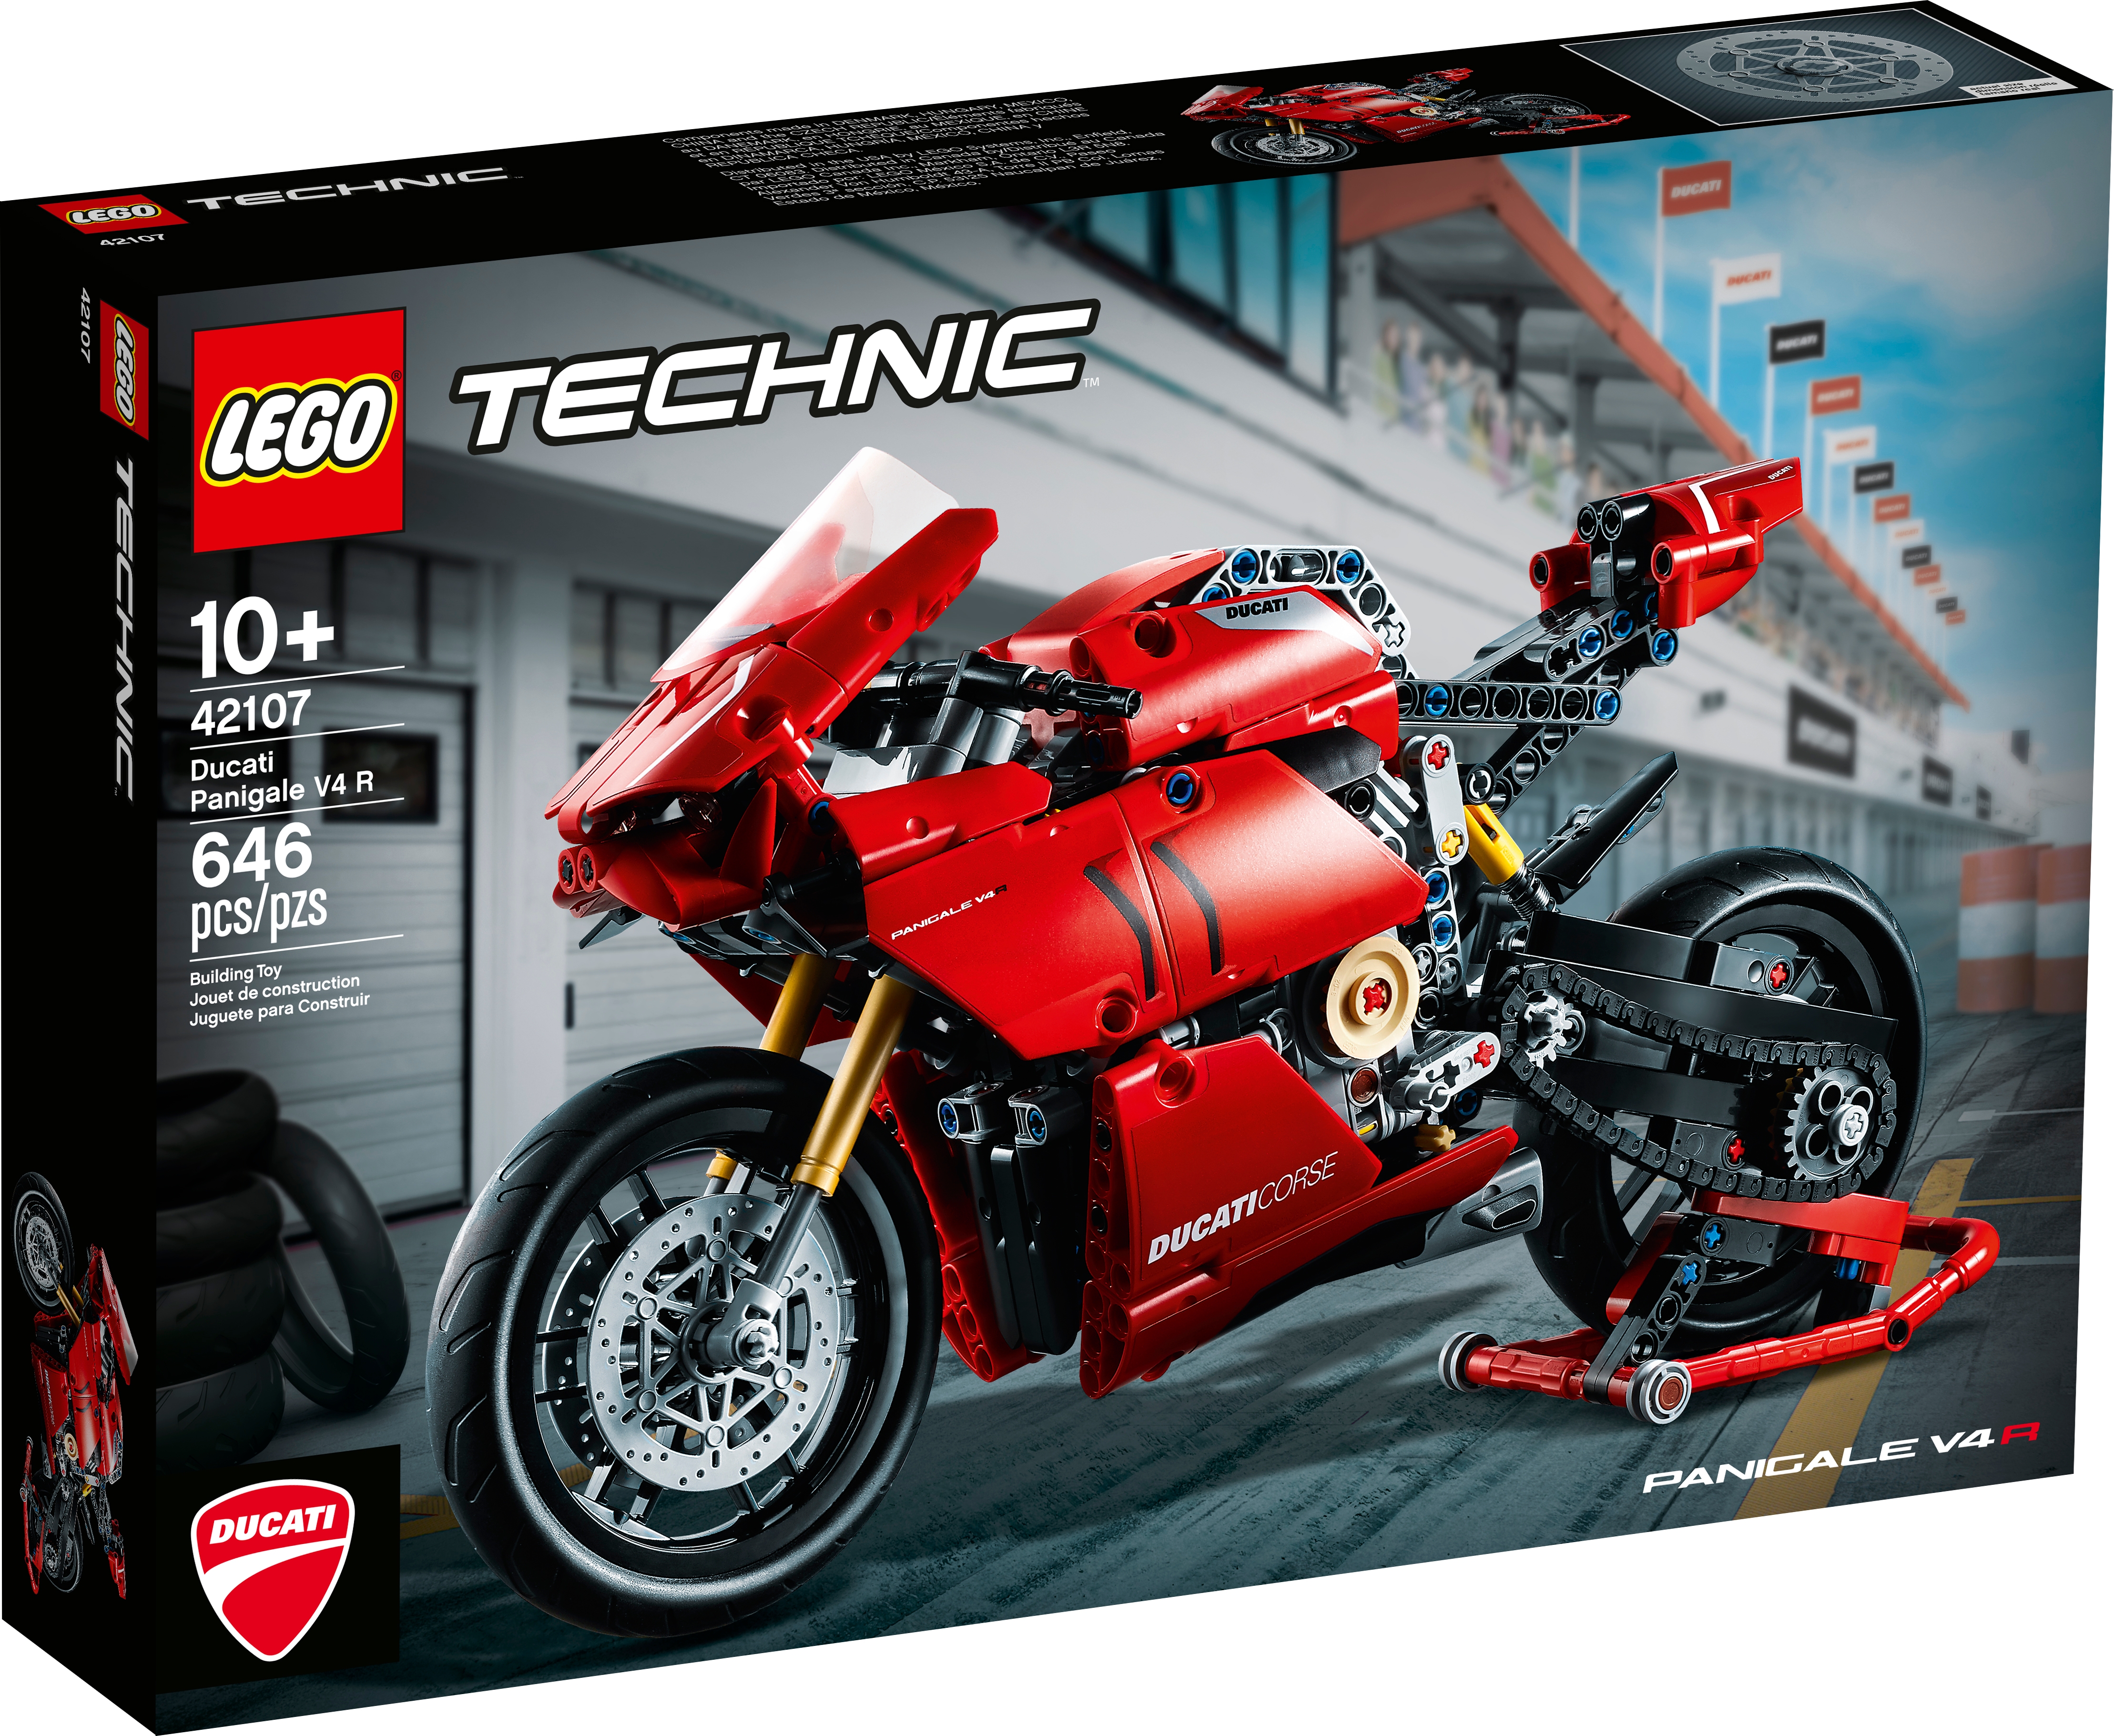 Vitrina A Prueba De Polvo Caja de Exhibición wangxike Vitrina de Acrílico Compatible con Lego 42107 Ducati Panigale V4 R Motocicleta Juego de Modelo No Incluido 